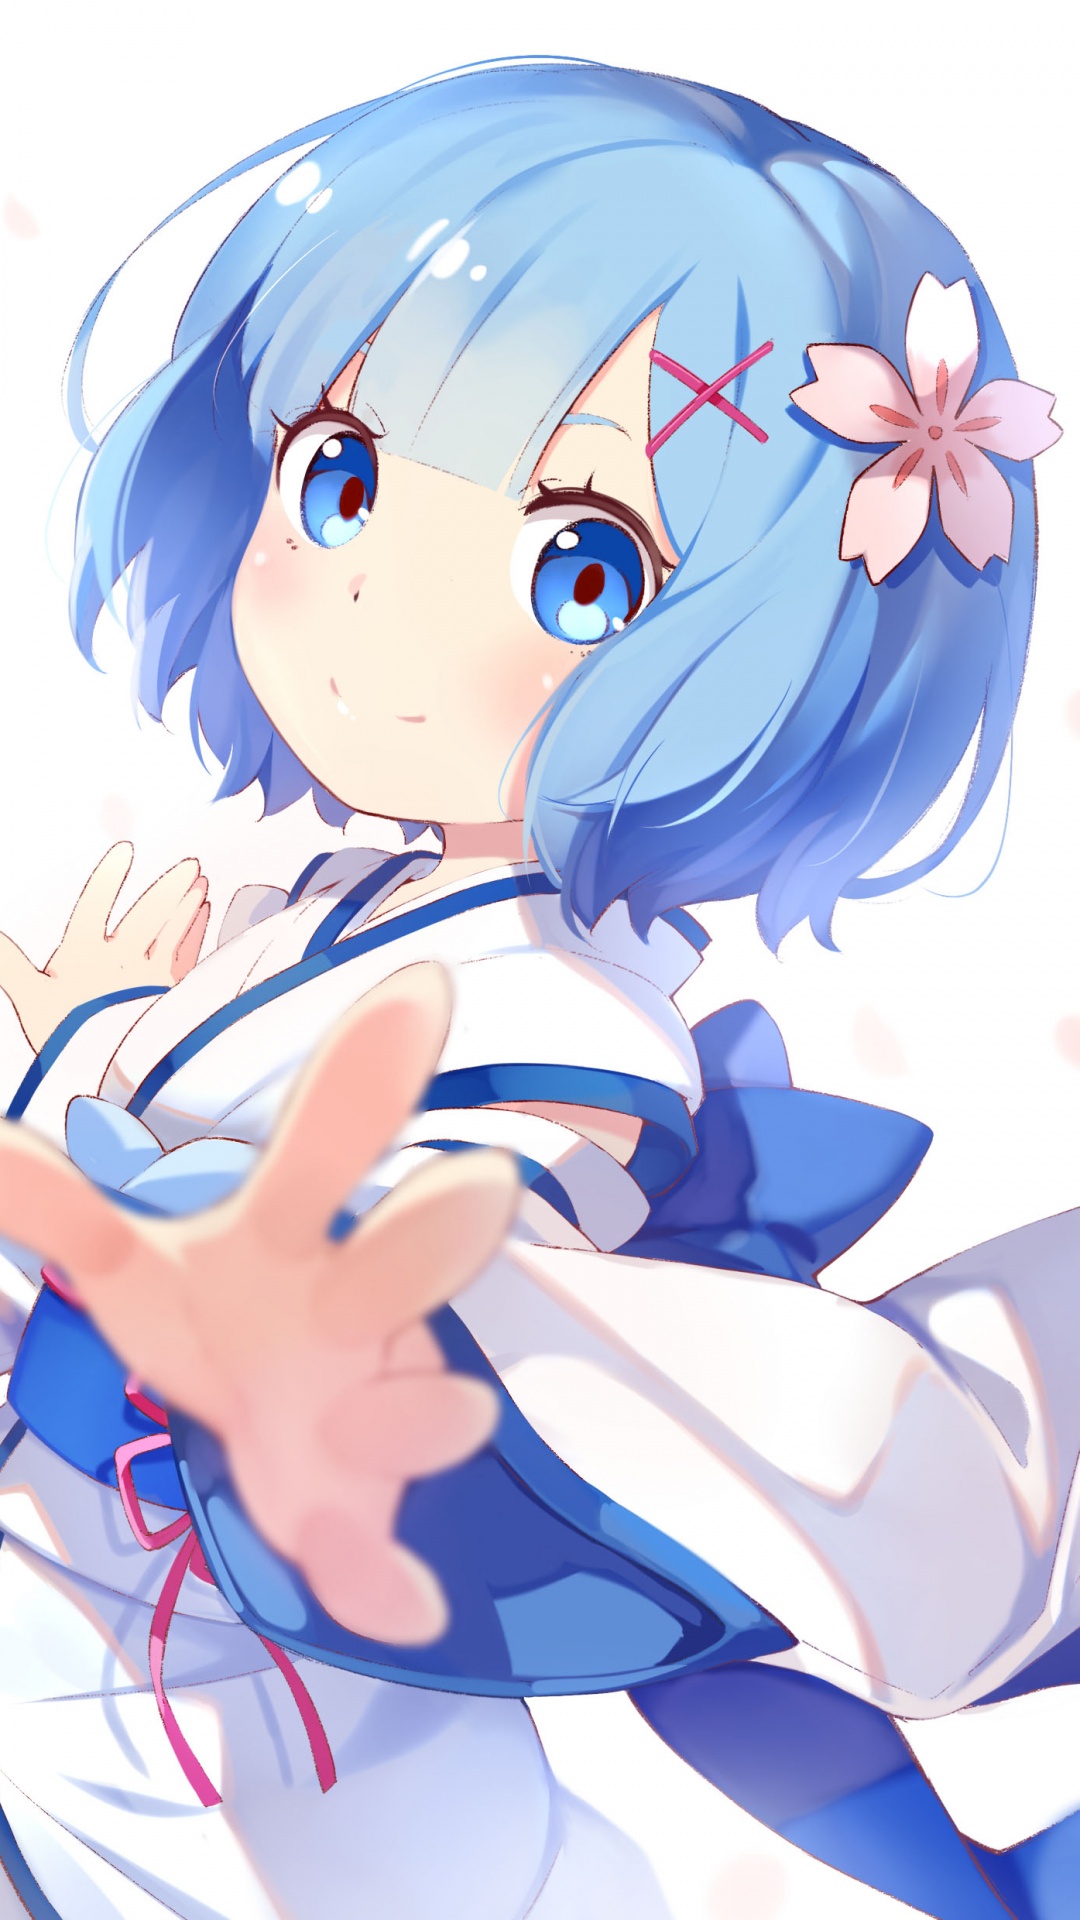 Chica en Vestido Azul Personaje de Anime. Wallpaper in 1080x1920 Resolution